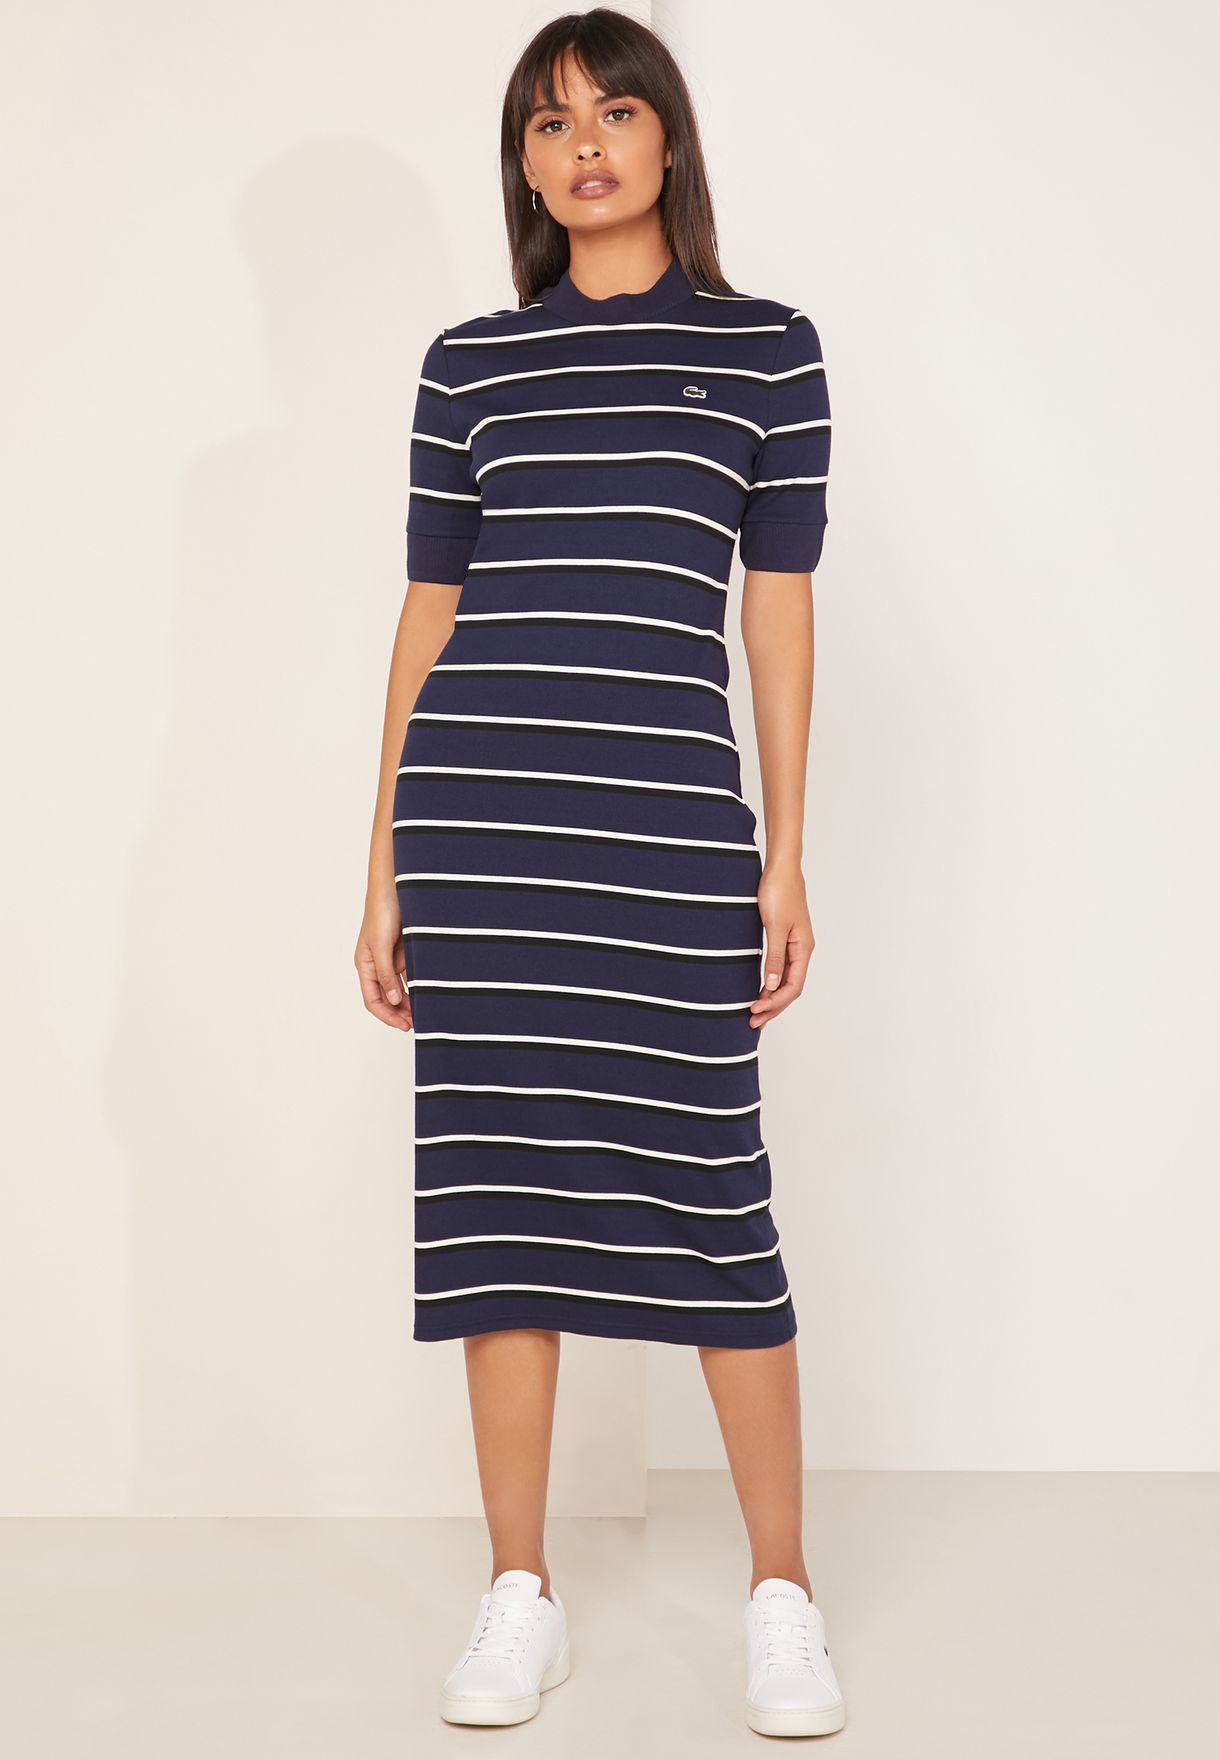 Rekvisitter filter Egnet Buy Lacoste Live Brand prints High Neck Striped T-Shirt Dress for Women in  MENA, Worldwide